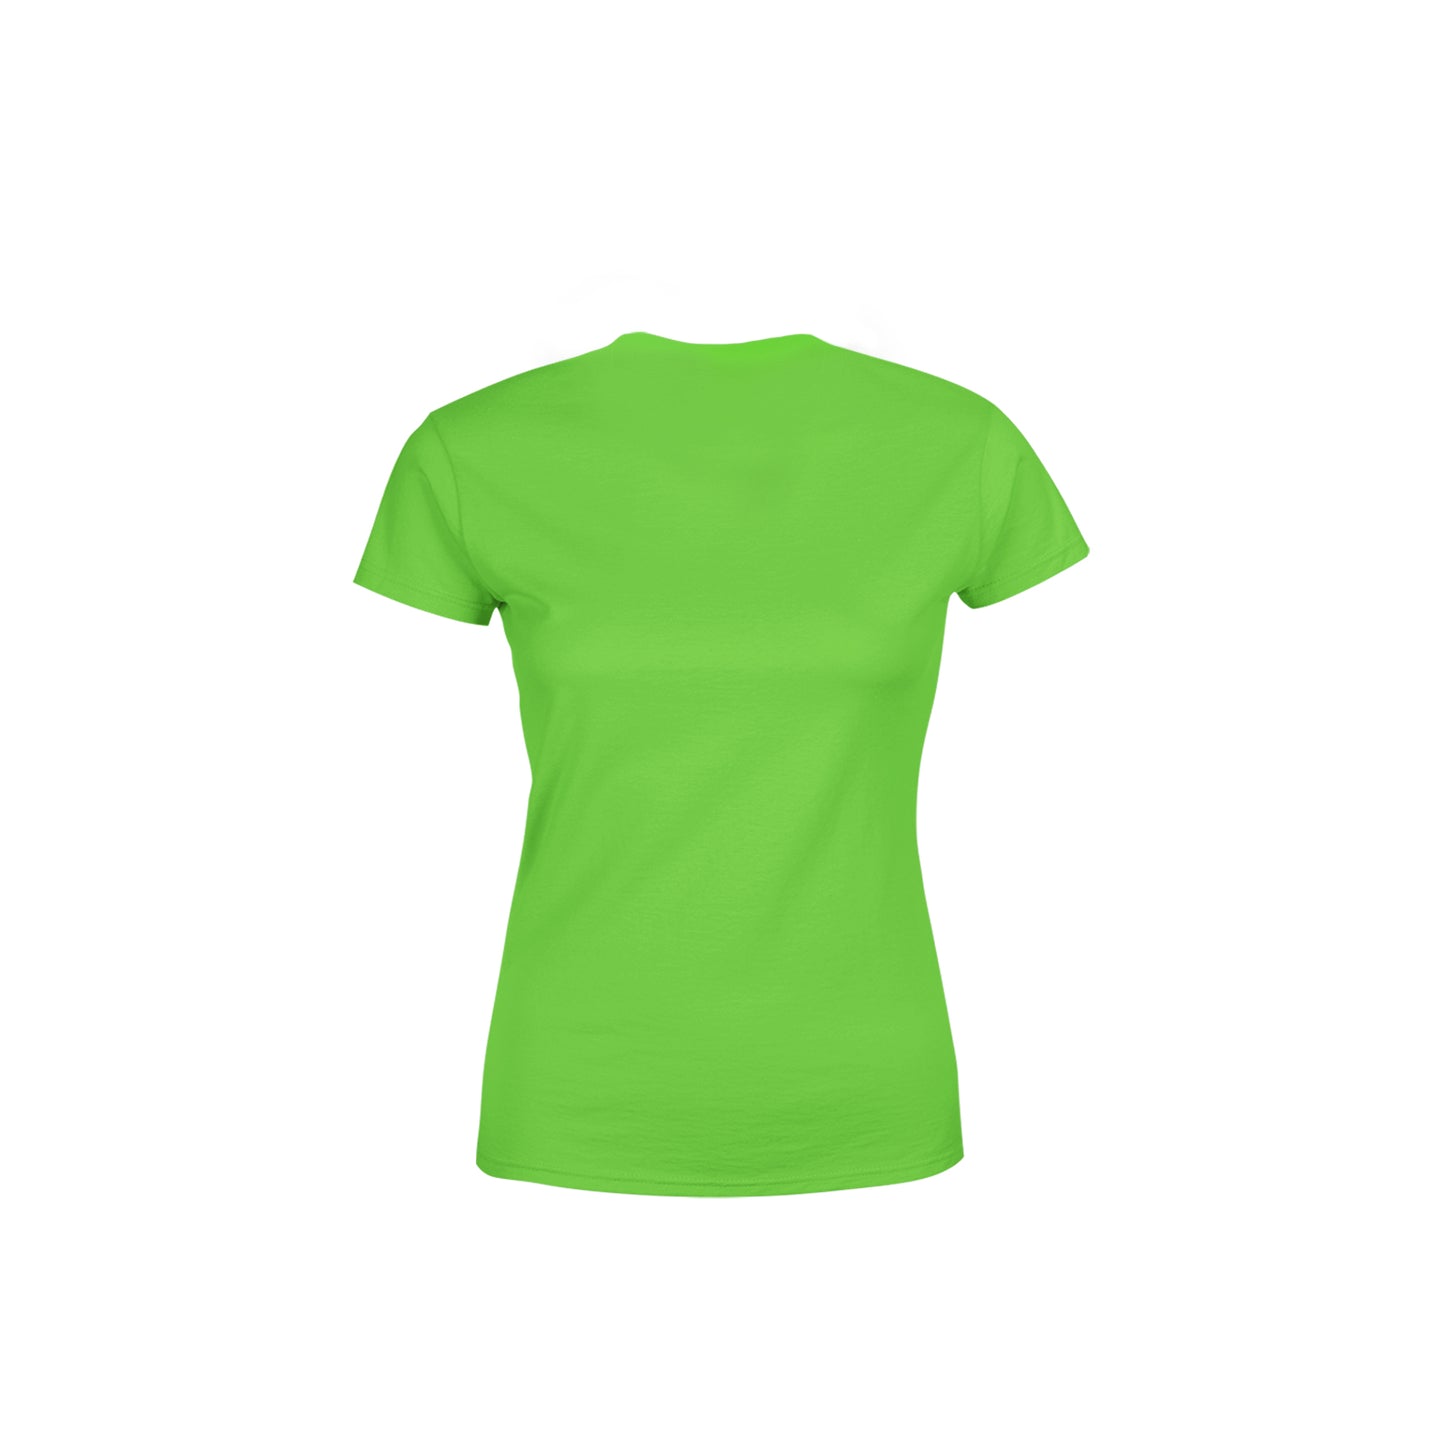 55 Number Women's T-Shirt (Liril Green)